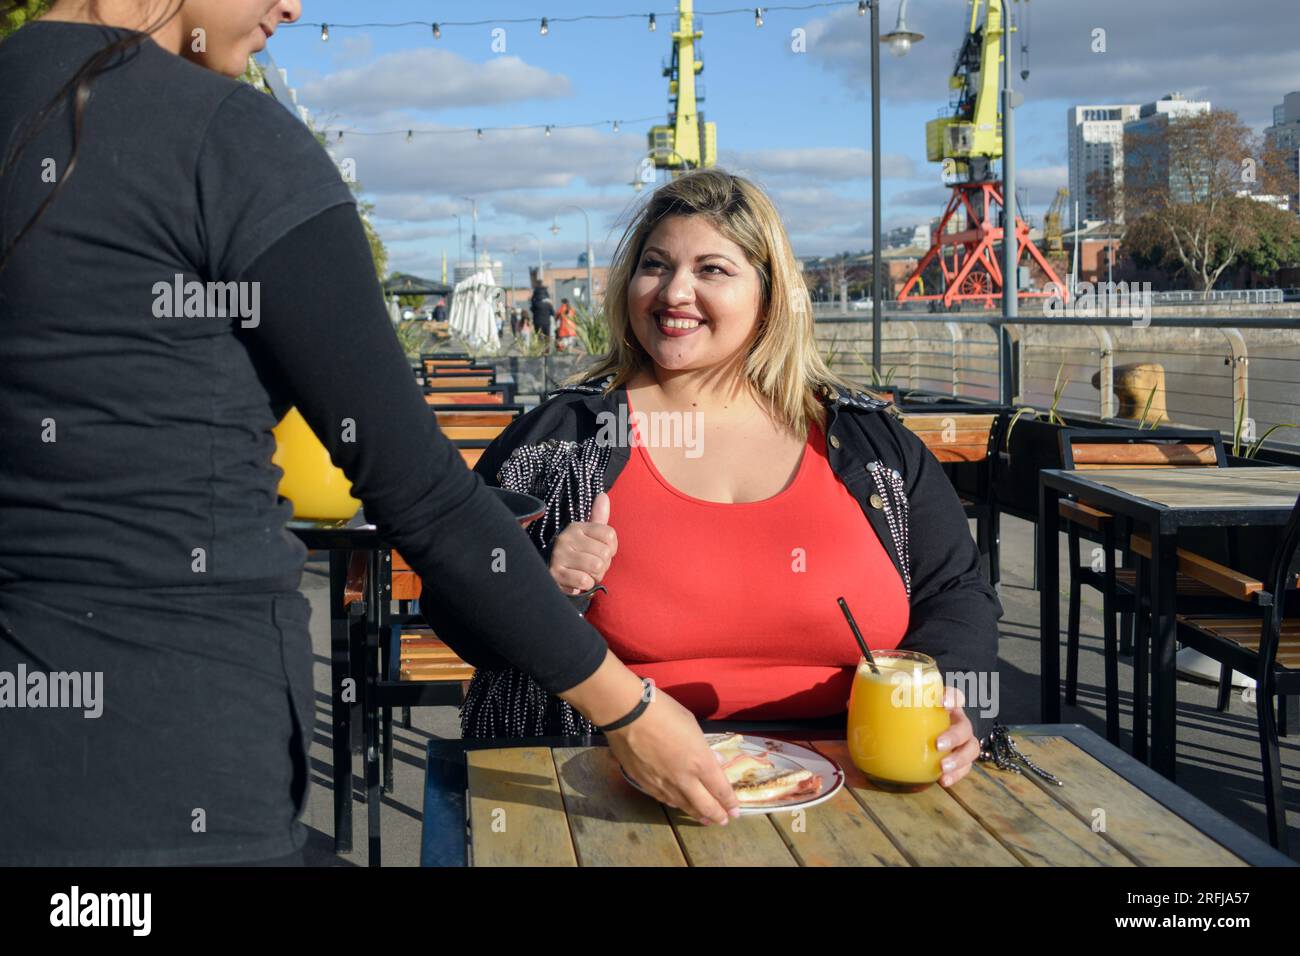 jeune femme latine blonde plus grande souriante très heureuse, assise à l'extérieur du restaurant au coucher du soleil, tandis que la serveuse lui sert un sandwich à l'orange Banque D'Images